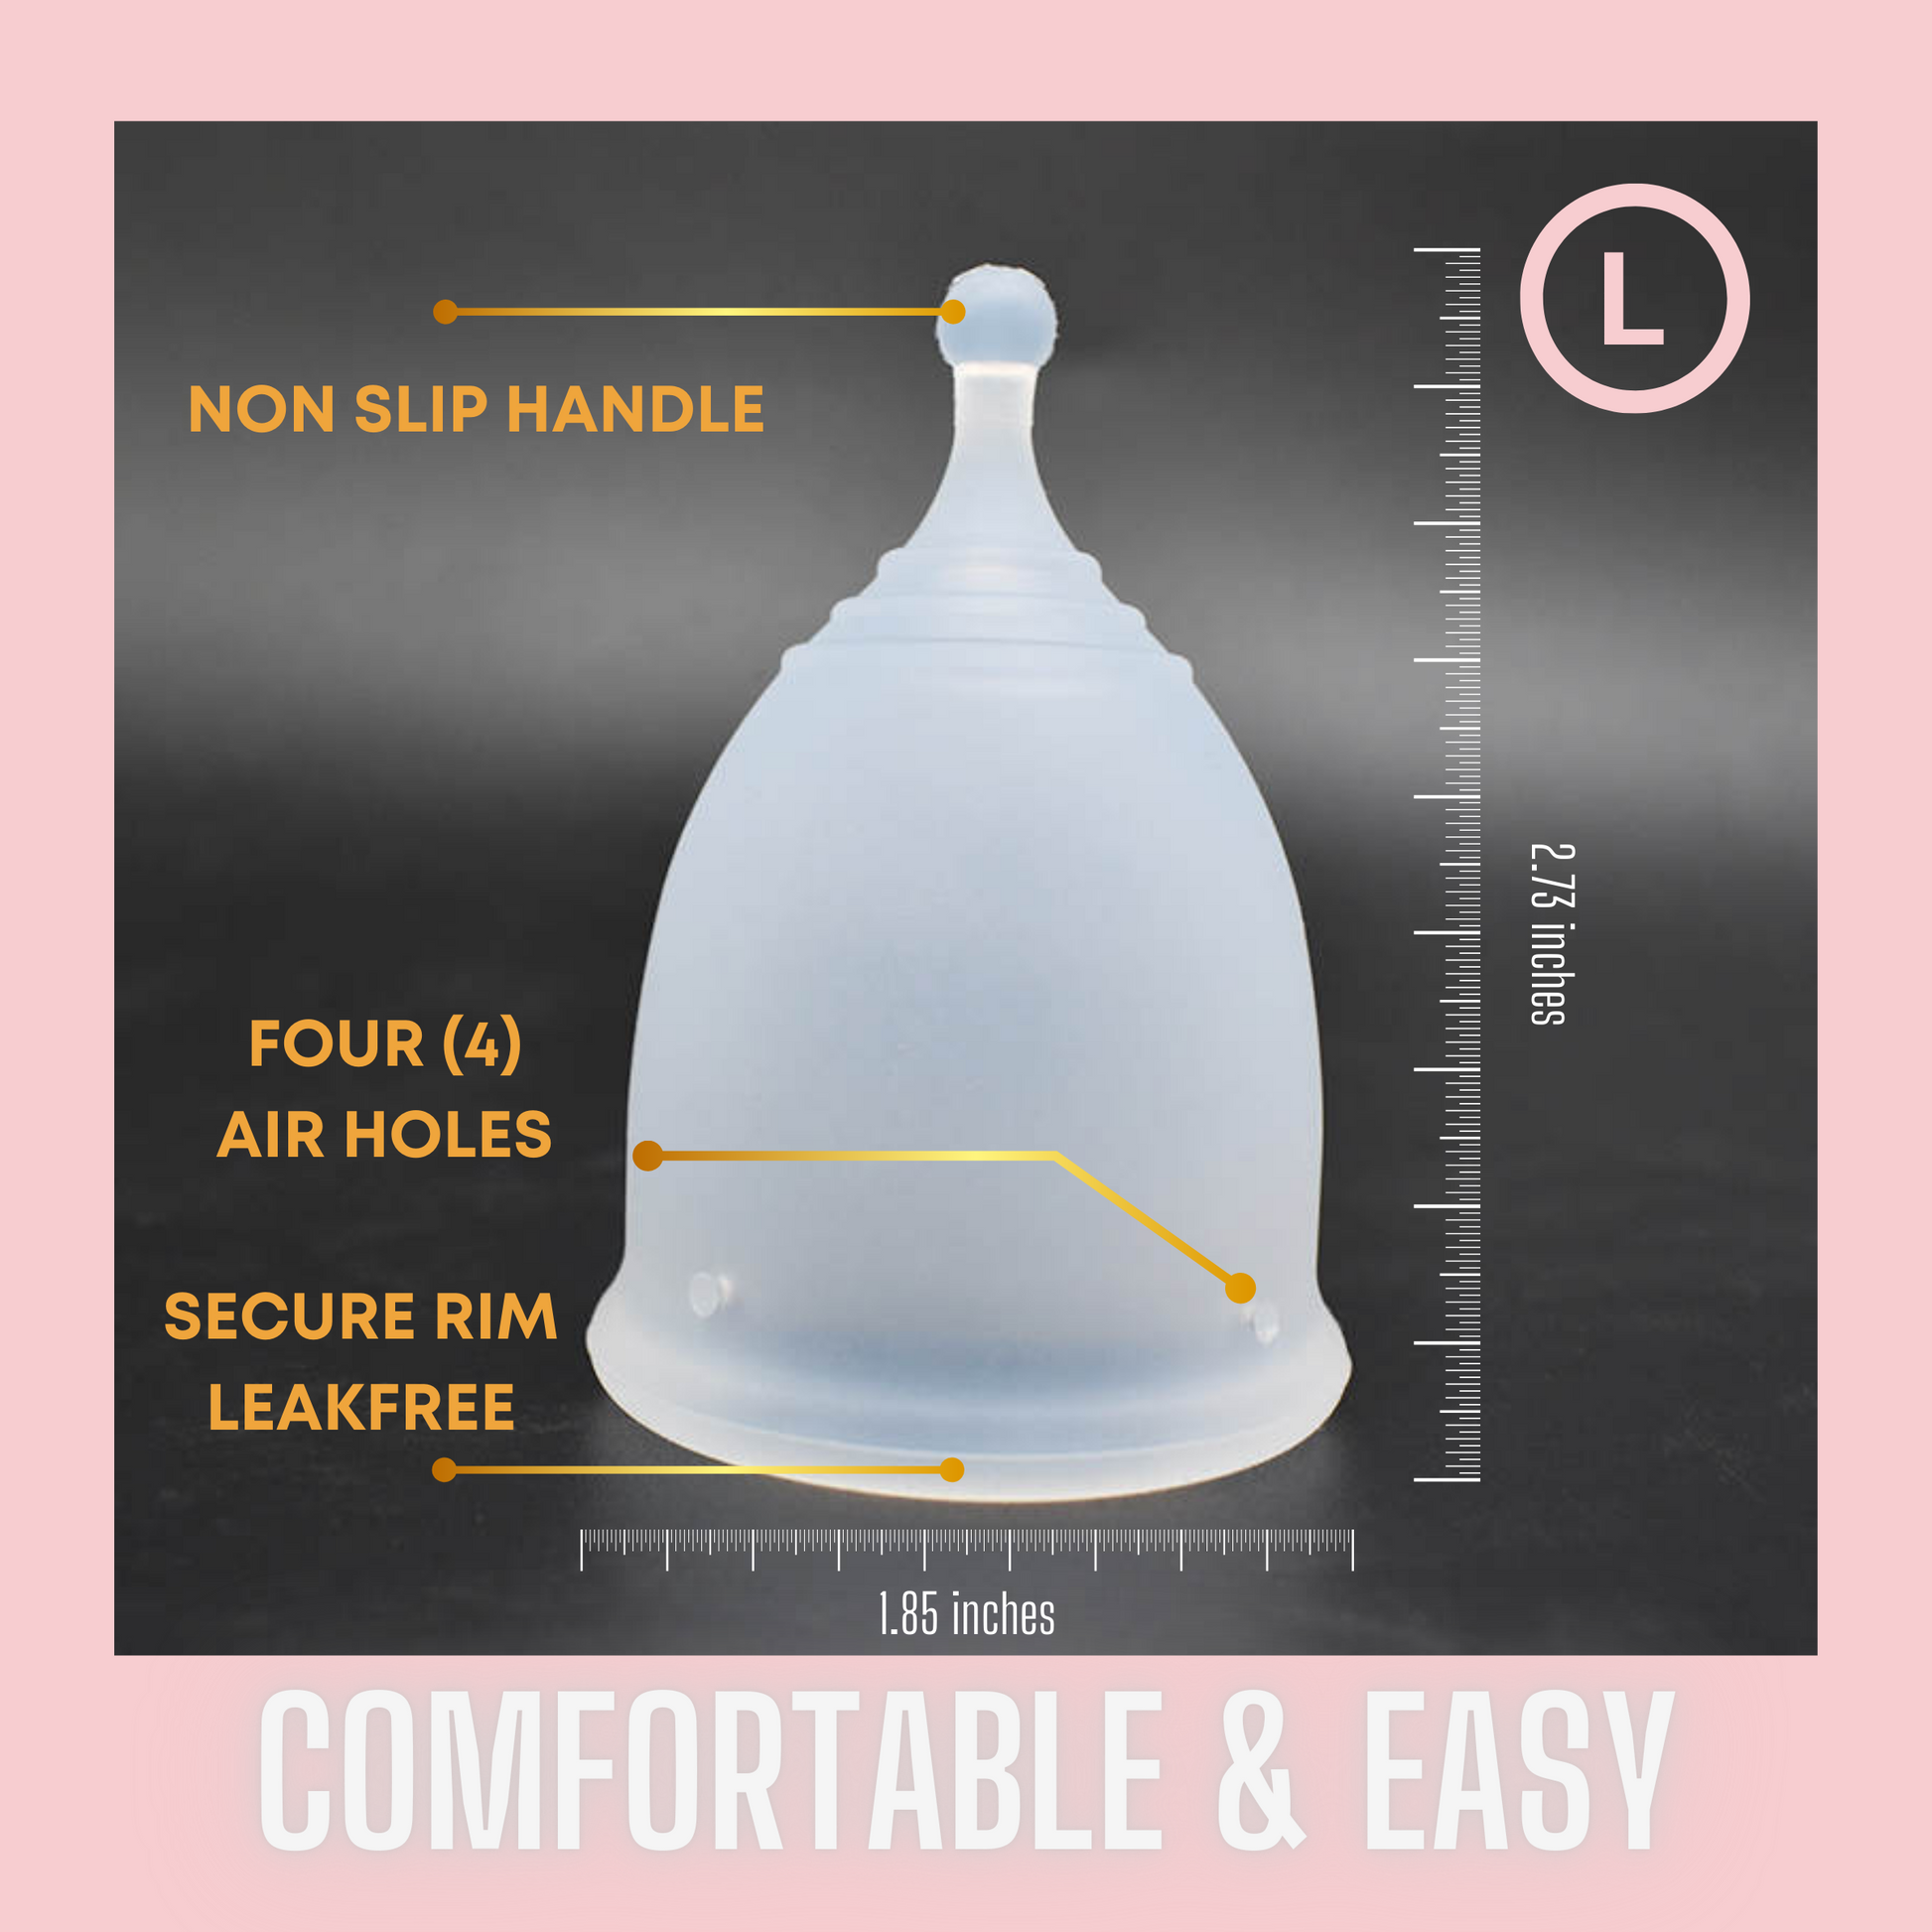 Lena Cup Sensitive: menstrual cup